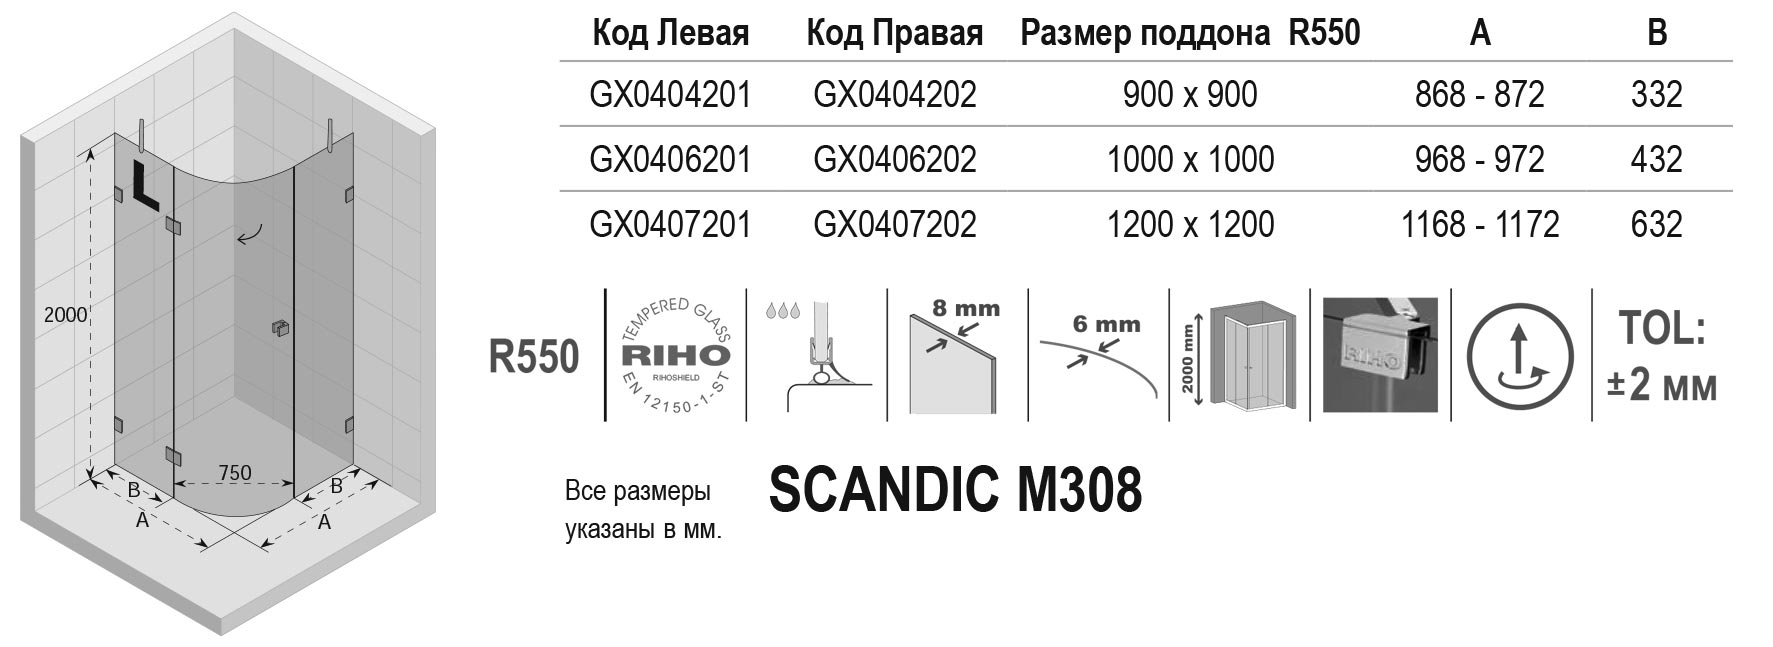 Чертёж Riho Scandic M308 GX0406201